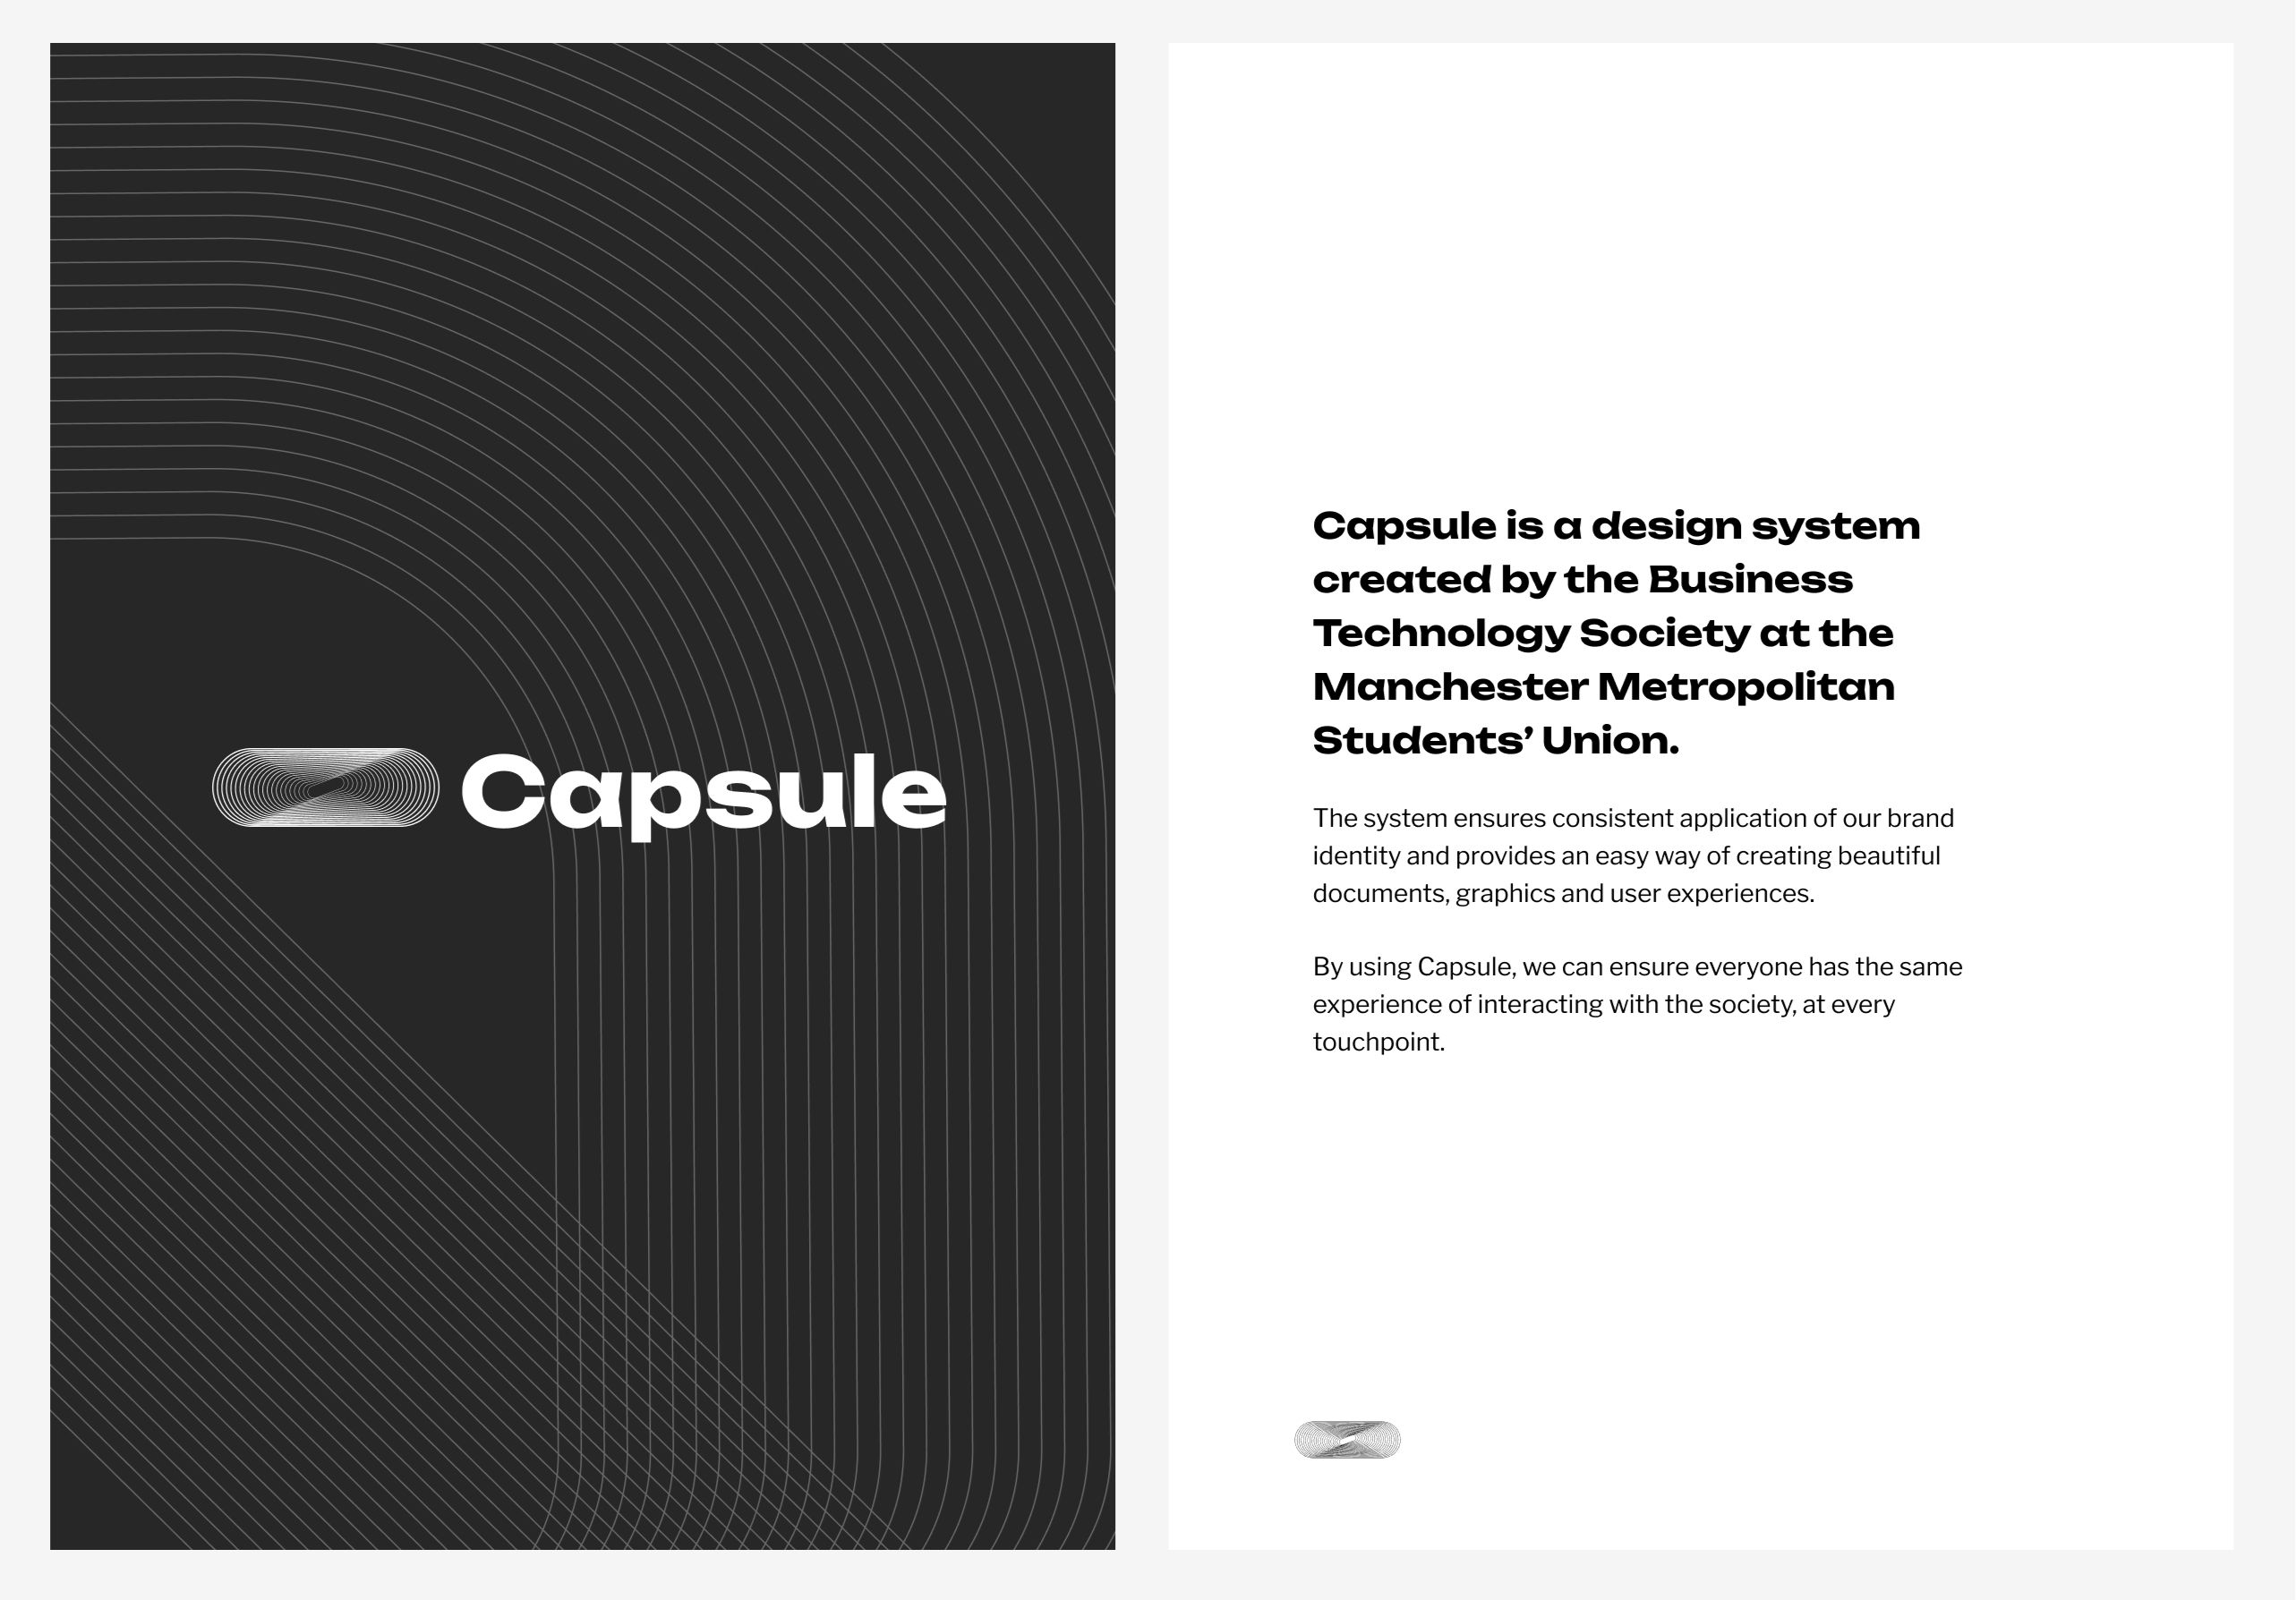 Capsule design system